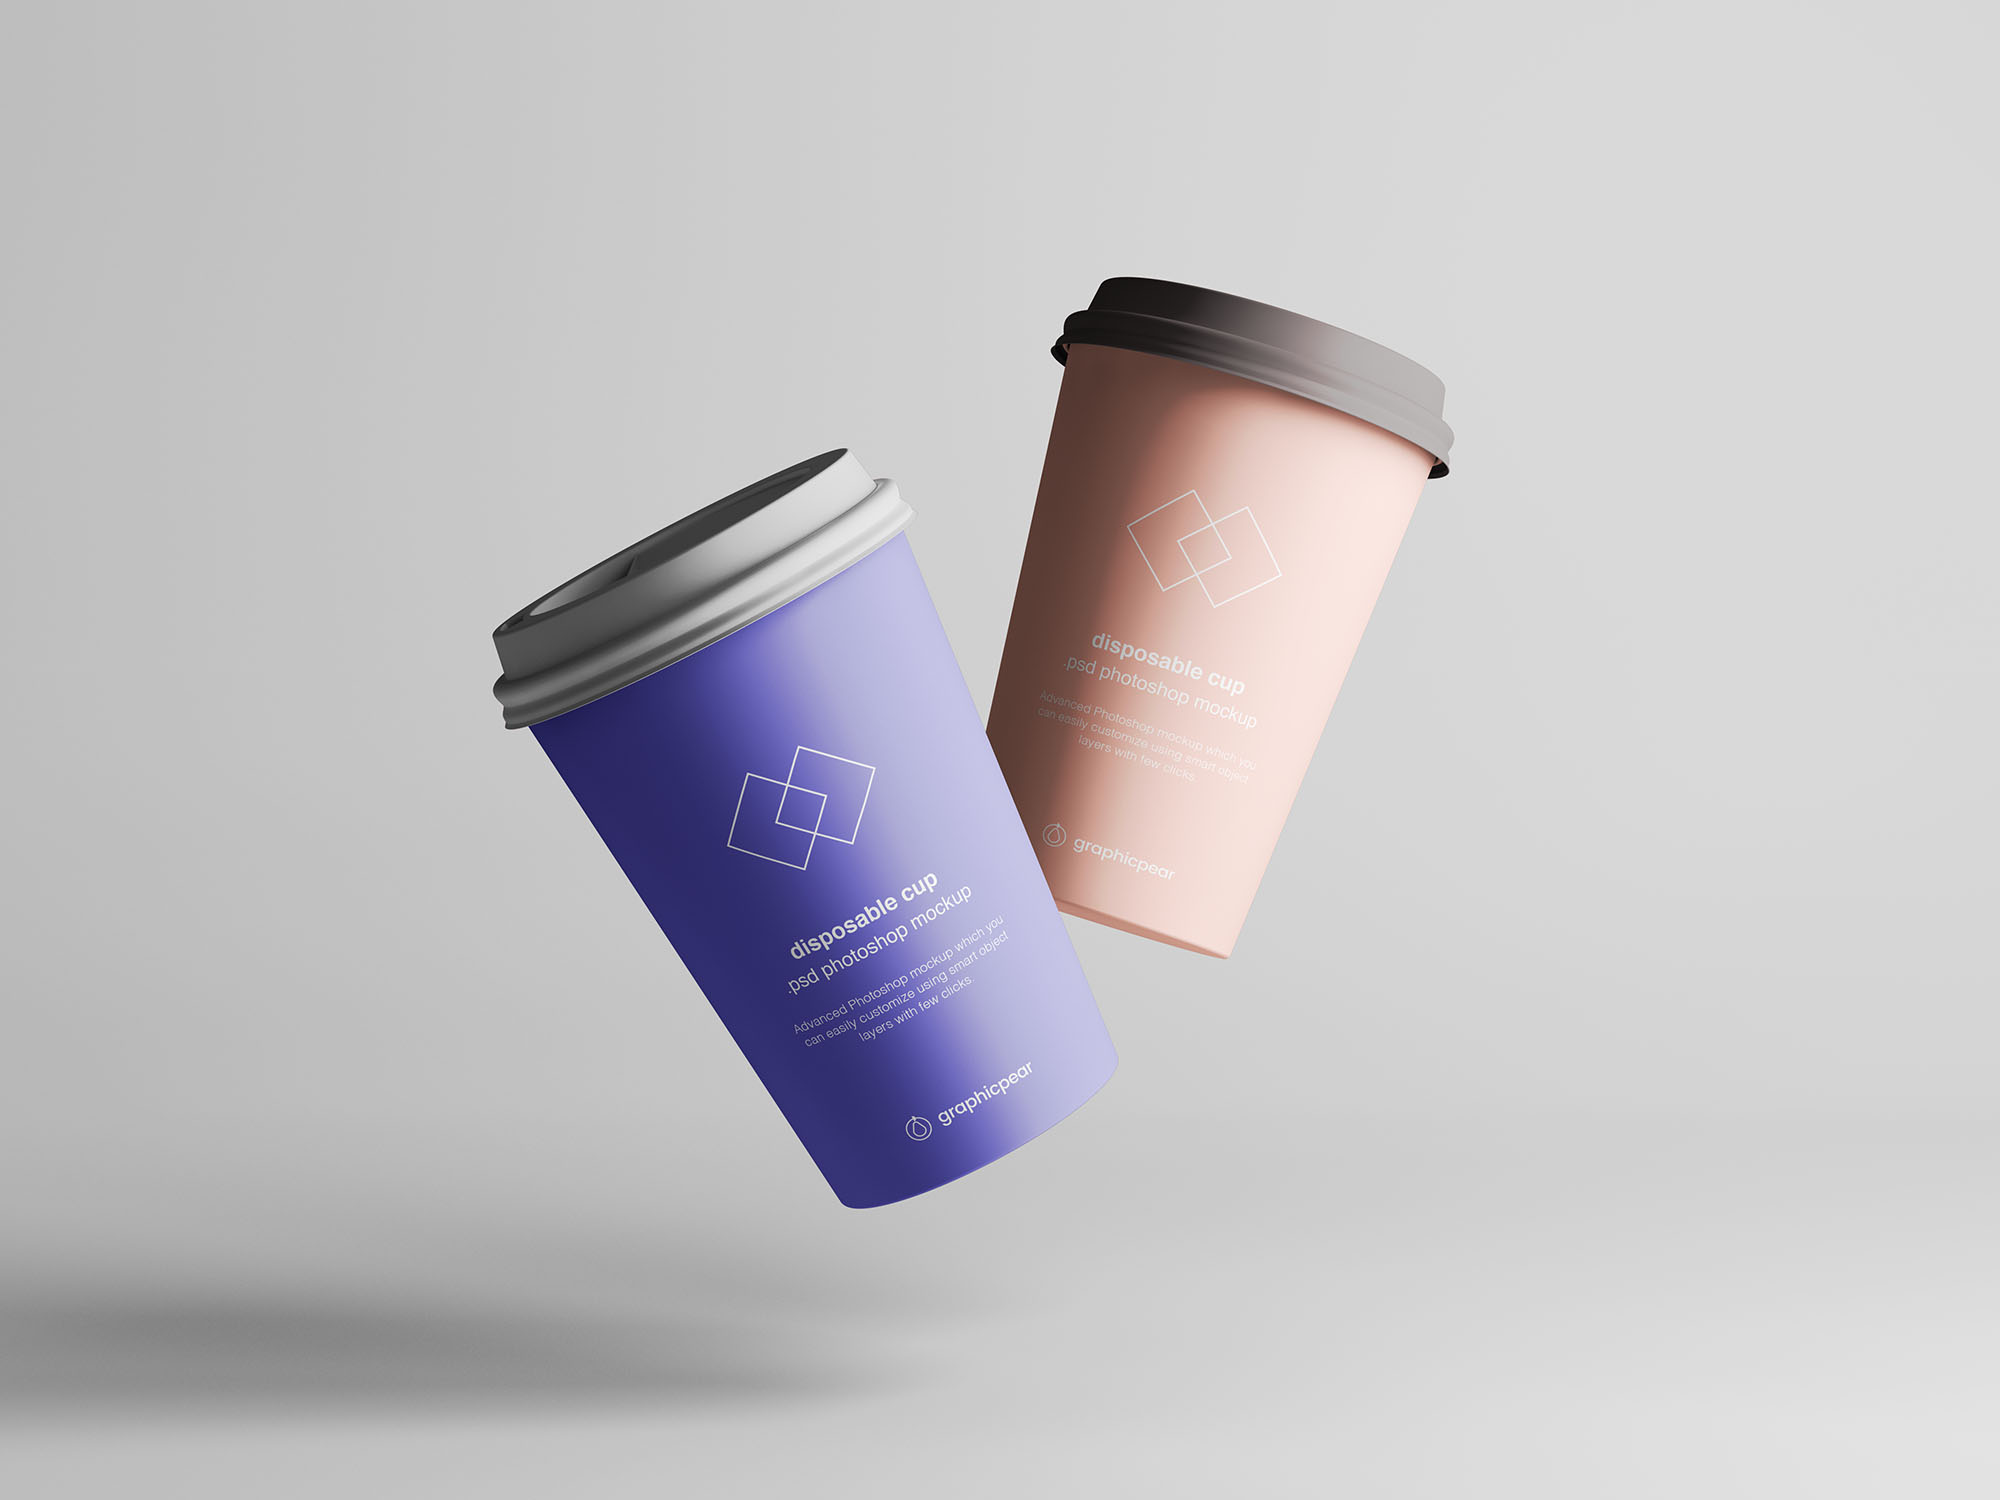 7个咖啡纸杯定制外观设计效果图样机模板 7 Coffee Cup Mockups插图(5)